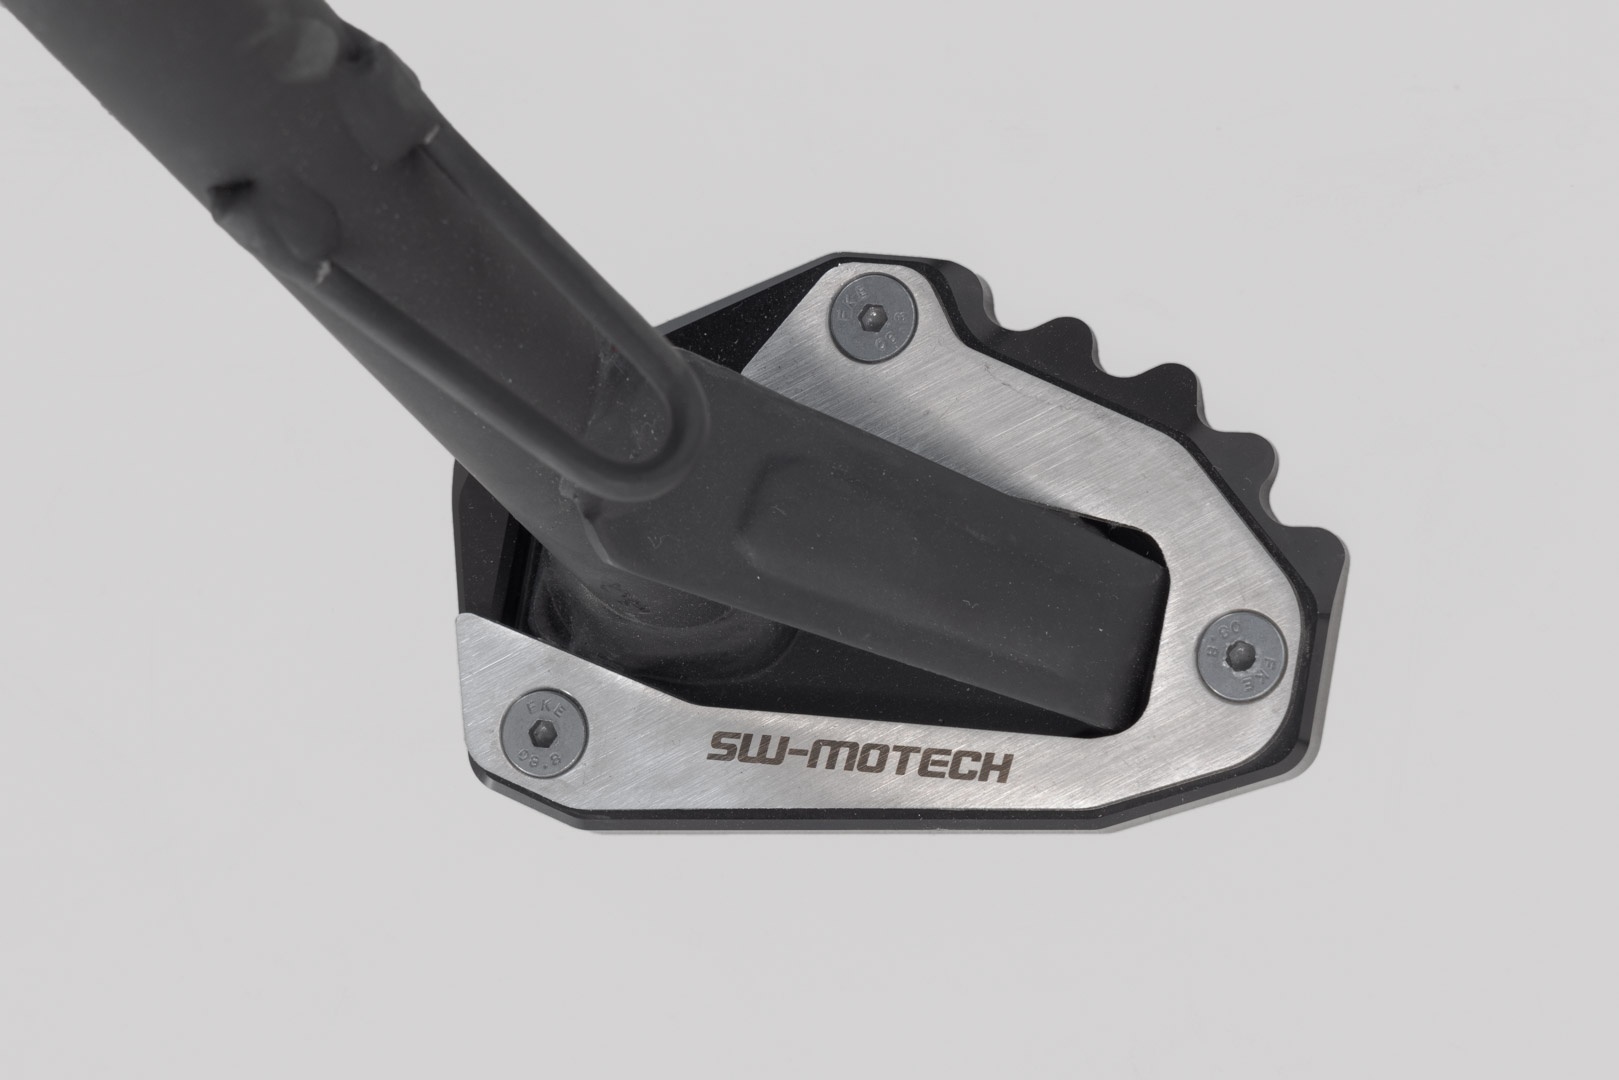 SW-Motech Extension voor zijstandaard voet - Zwart/Zilver. Ducati modellen.